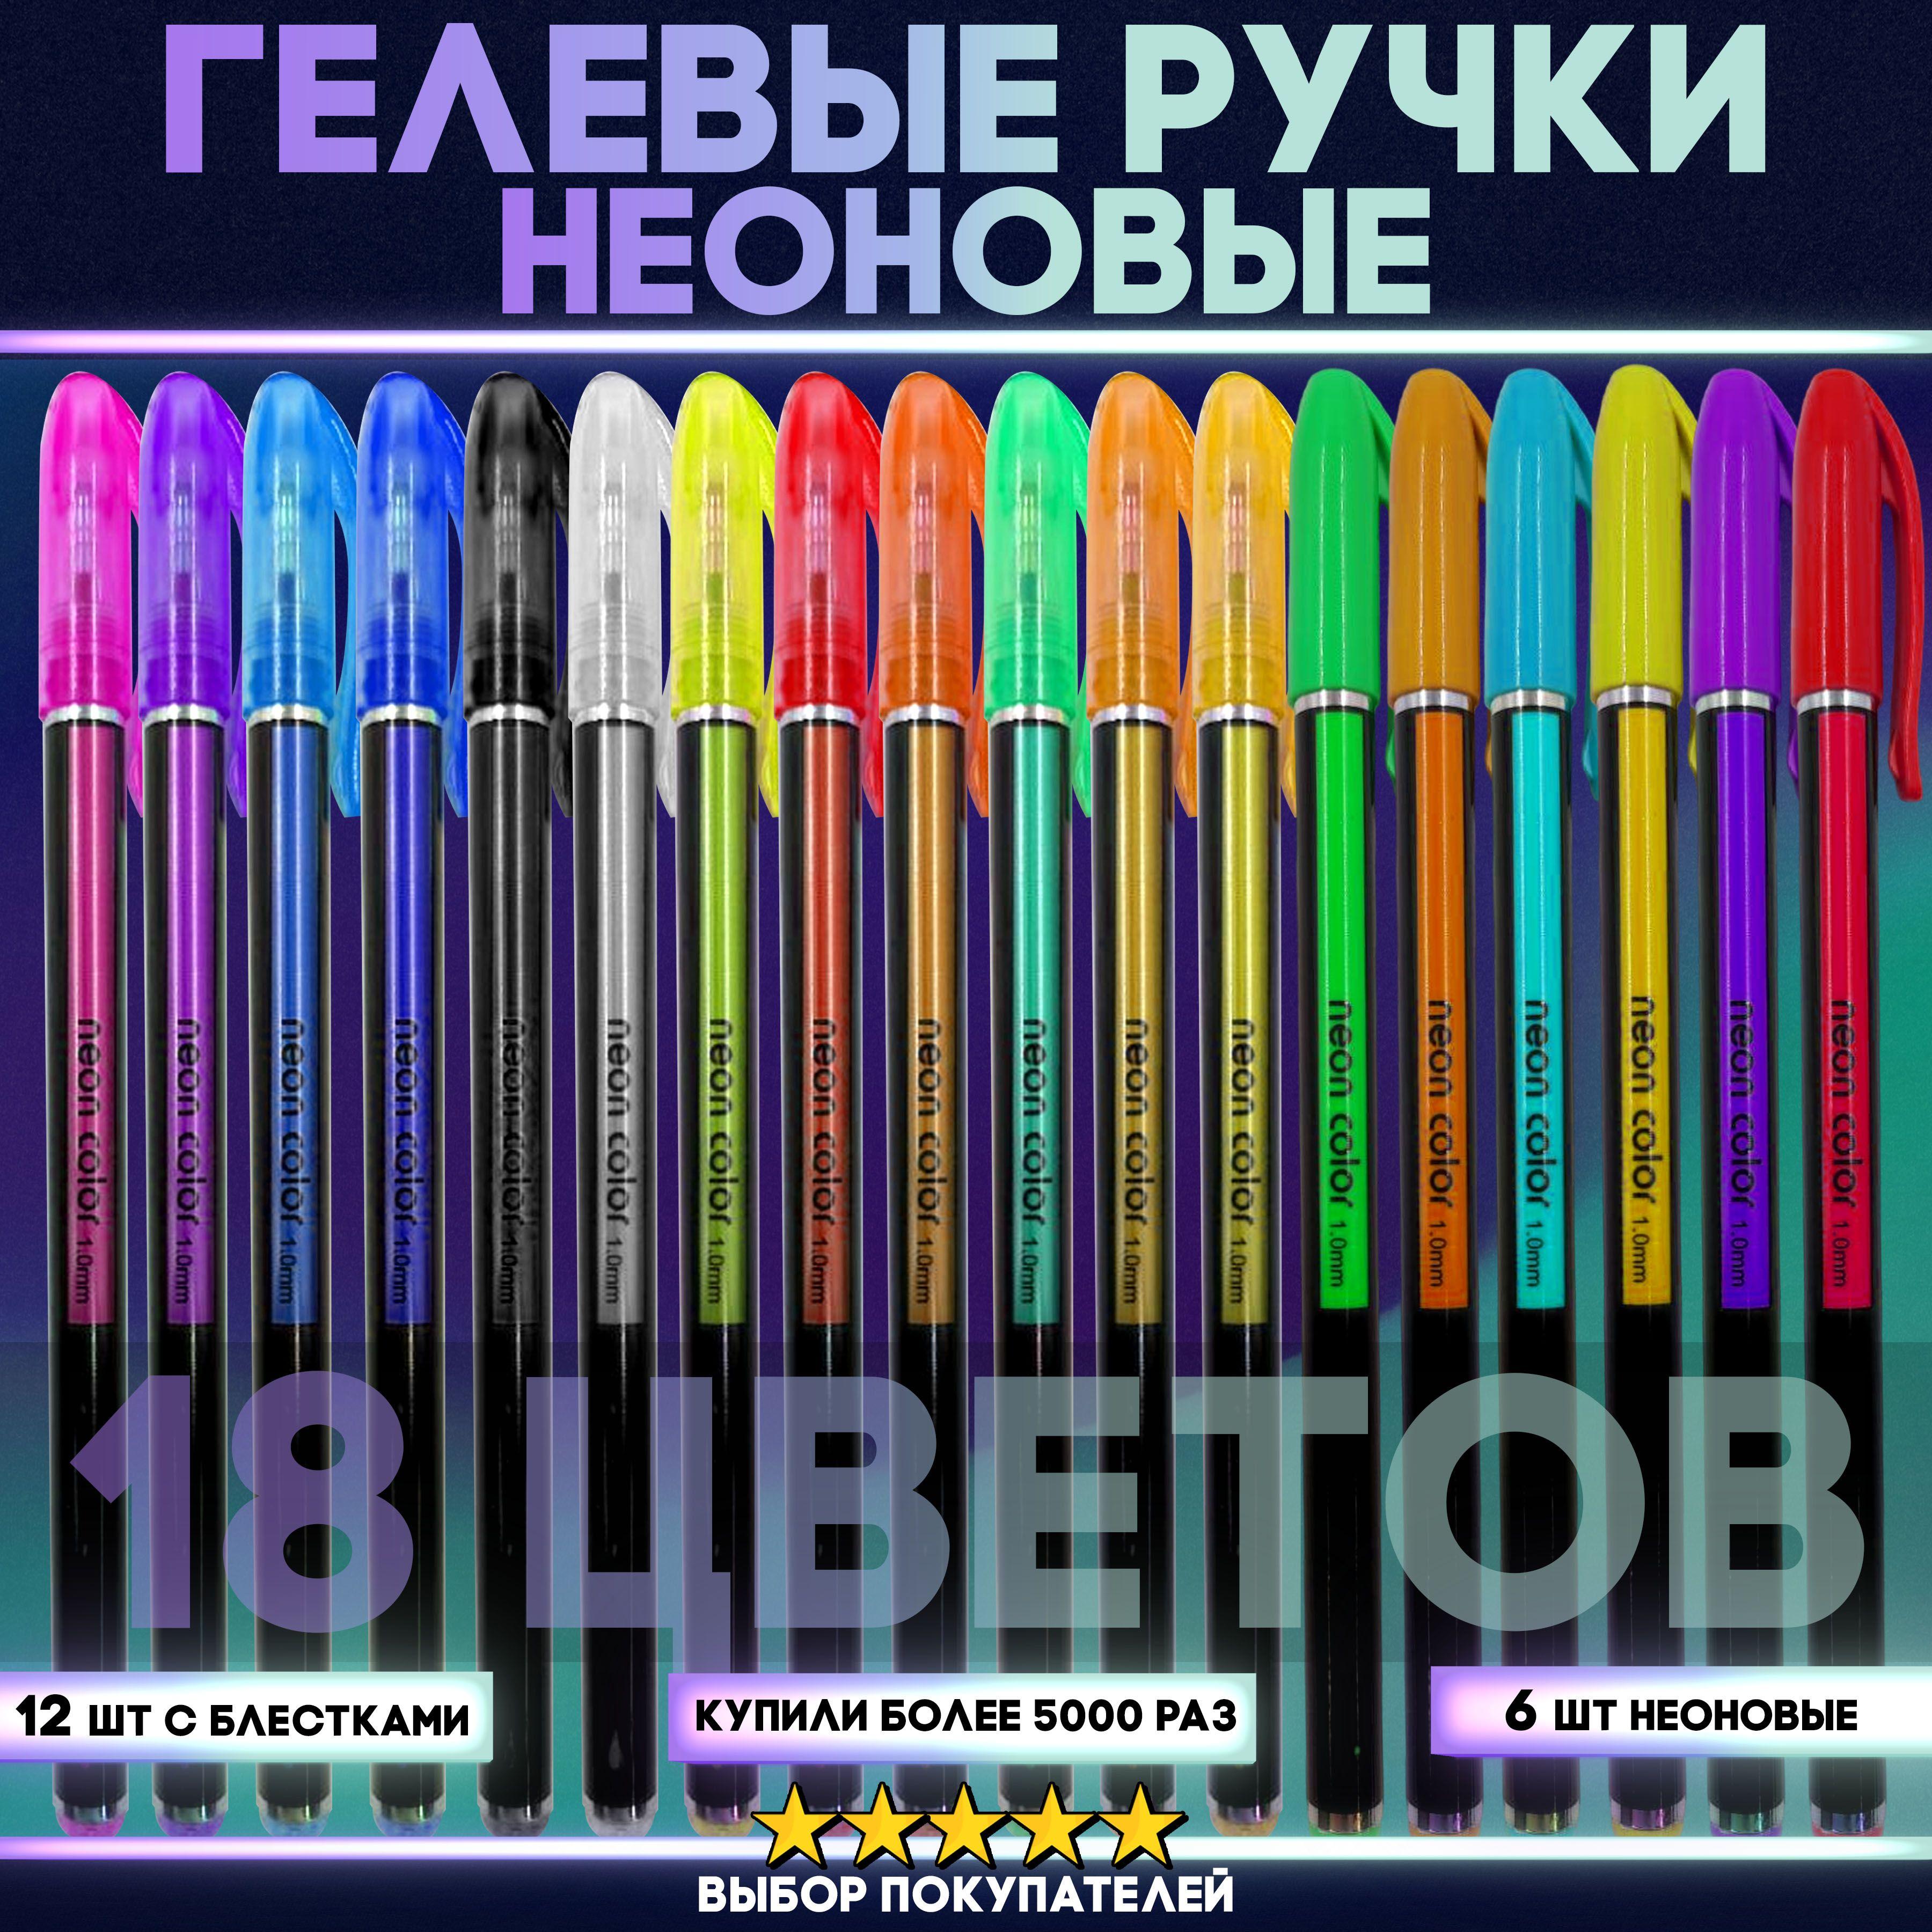 Неоновые гелевые ручки, набор из 18 цветов. Блестящие ручки высокого качества для рисования, скетчинга и творчества / Подарочный набор разноцветных ручек для школы, детей и взрослых